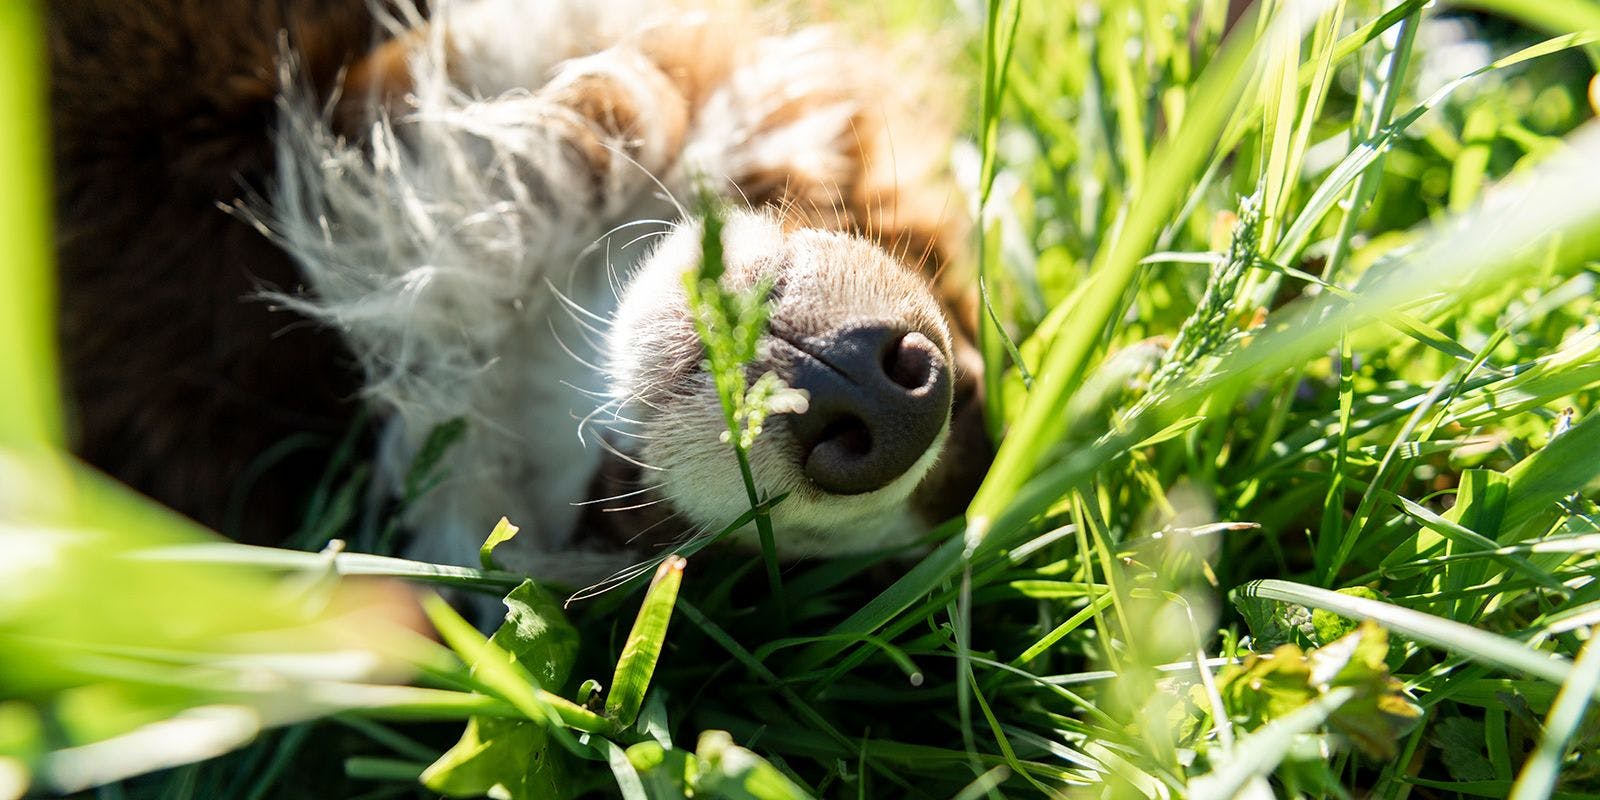 Puppy nose sticks up through the green grass.